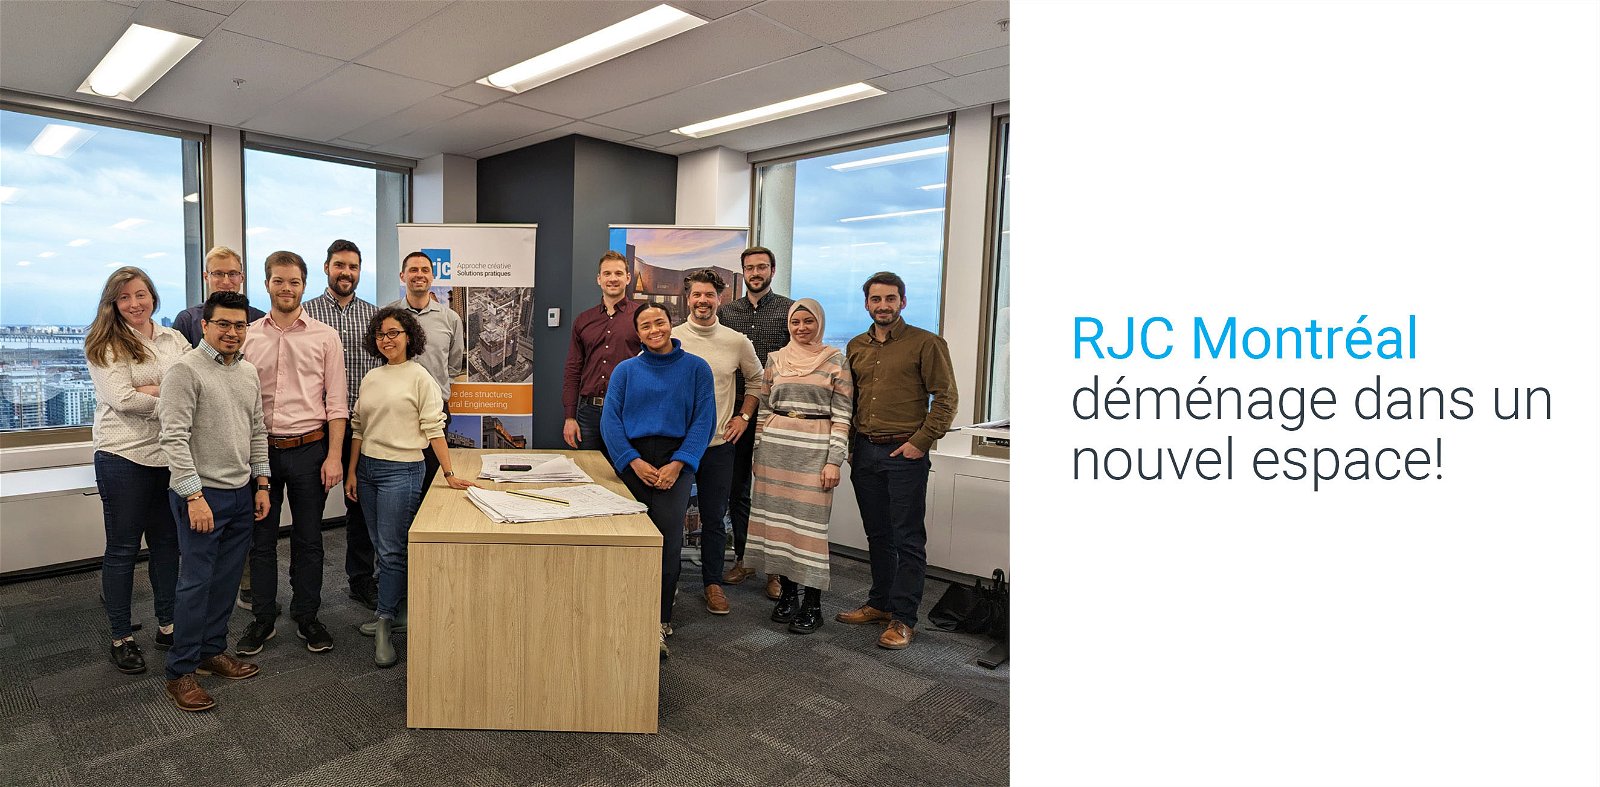 Le bureau de RJC Ingénierie de Montréal, en pleine croissance, déménage dans un nouvel espace moderne